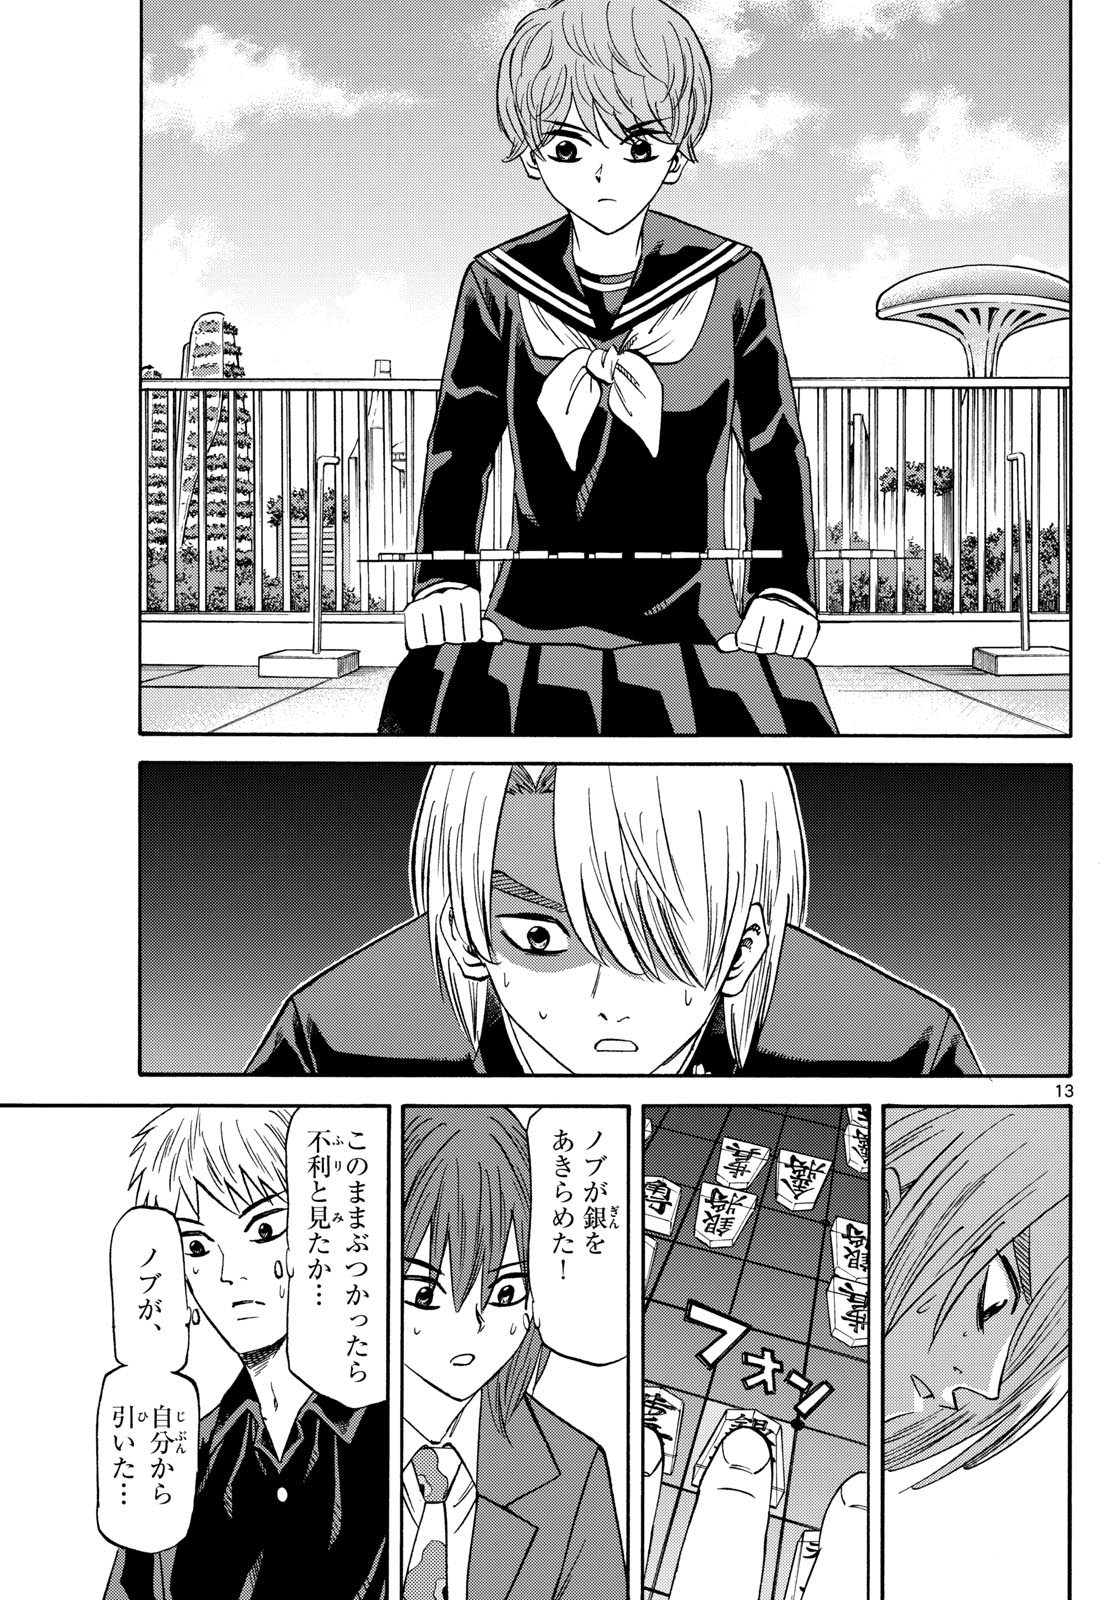 Tatsu to Ichigo - Chapter 187 - Page 13